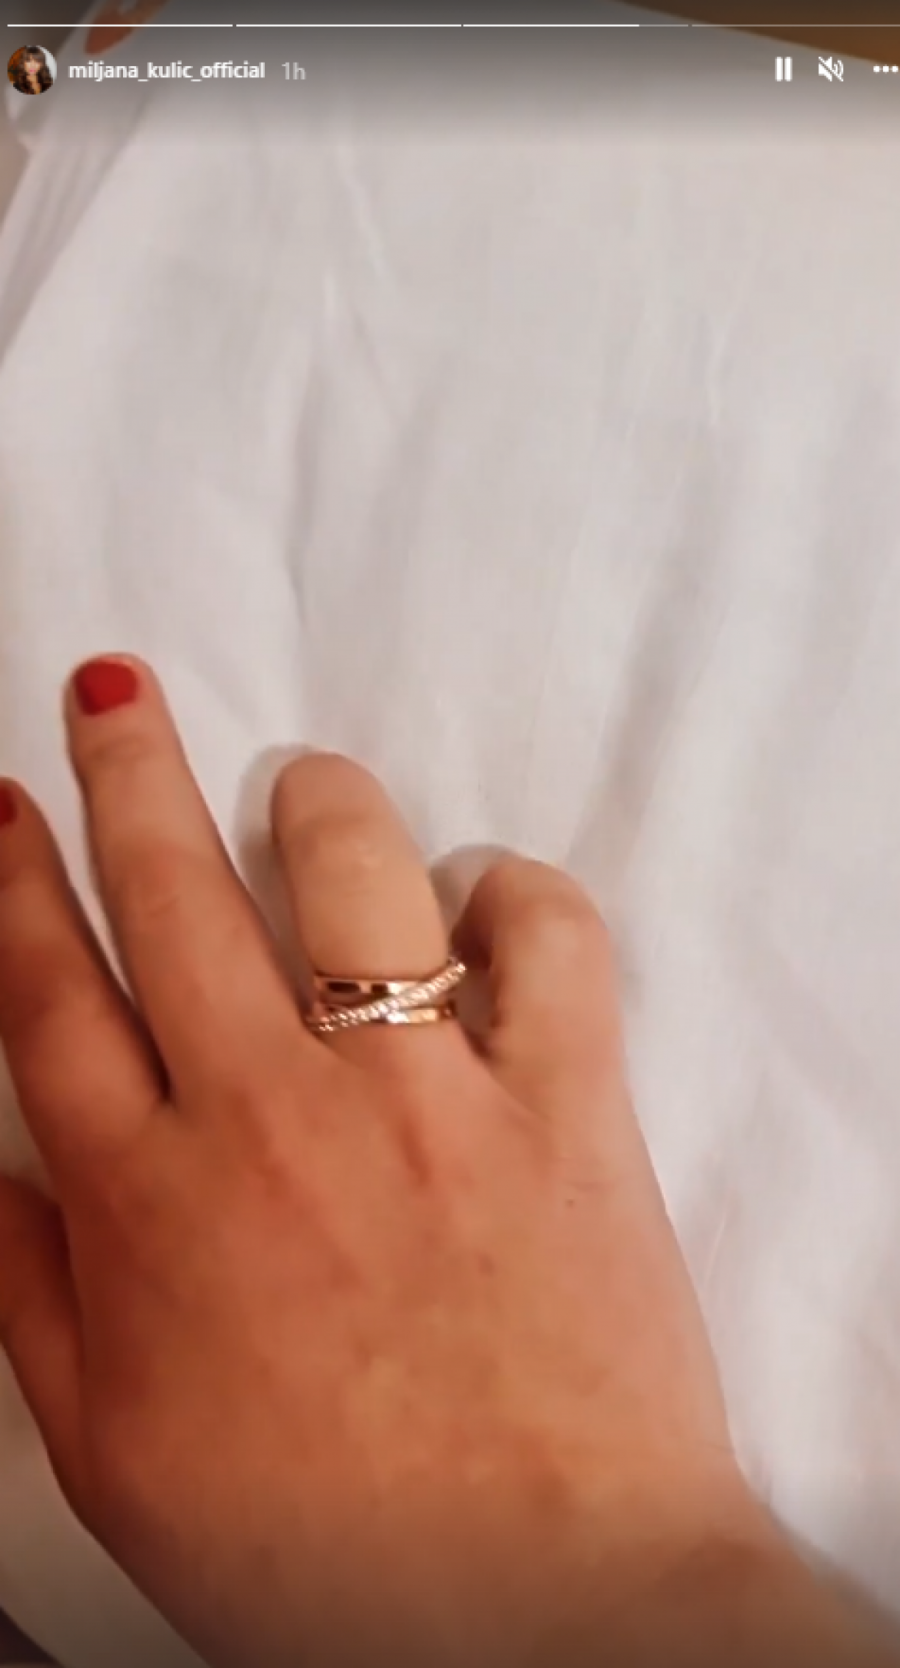 VERILA SE MILJANA KULIĆ? Rijaliti učesnica prvo pokazala novog dečka, a sada prsten! (FOTO)